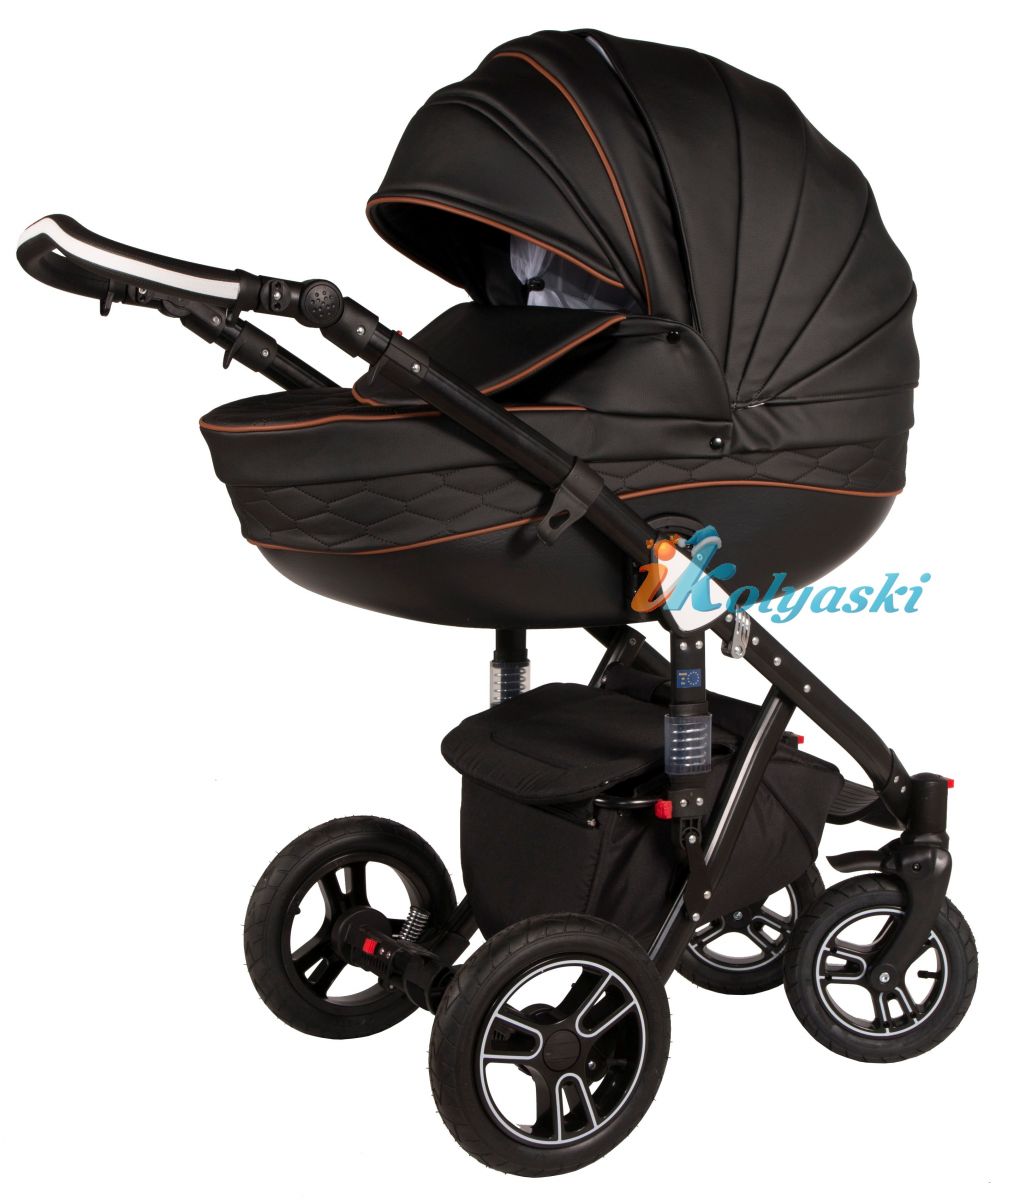 Kajtex Navy Plus Soft 2 в 1 экокожа и Basic Collection ткань, детская коляска для новорожденных, модульная на поворотных колесах, 2 в 1 Roan Bass Soft  - Роан Басс шасси Софт, обшивка люльки экокожа или ткань. Новинка 2018. Kajtex Navy Plus Soft 2 в 1, детская коляска для новорожденных, модульная коляска на поворотных колесах,  коляска 2 в 1, коляски для новорожденных, коляска с мягкой амортизацией, коляски для новорожденных 2018, коляска 2 в 1 купить, купить коляску дл